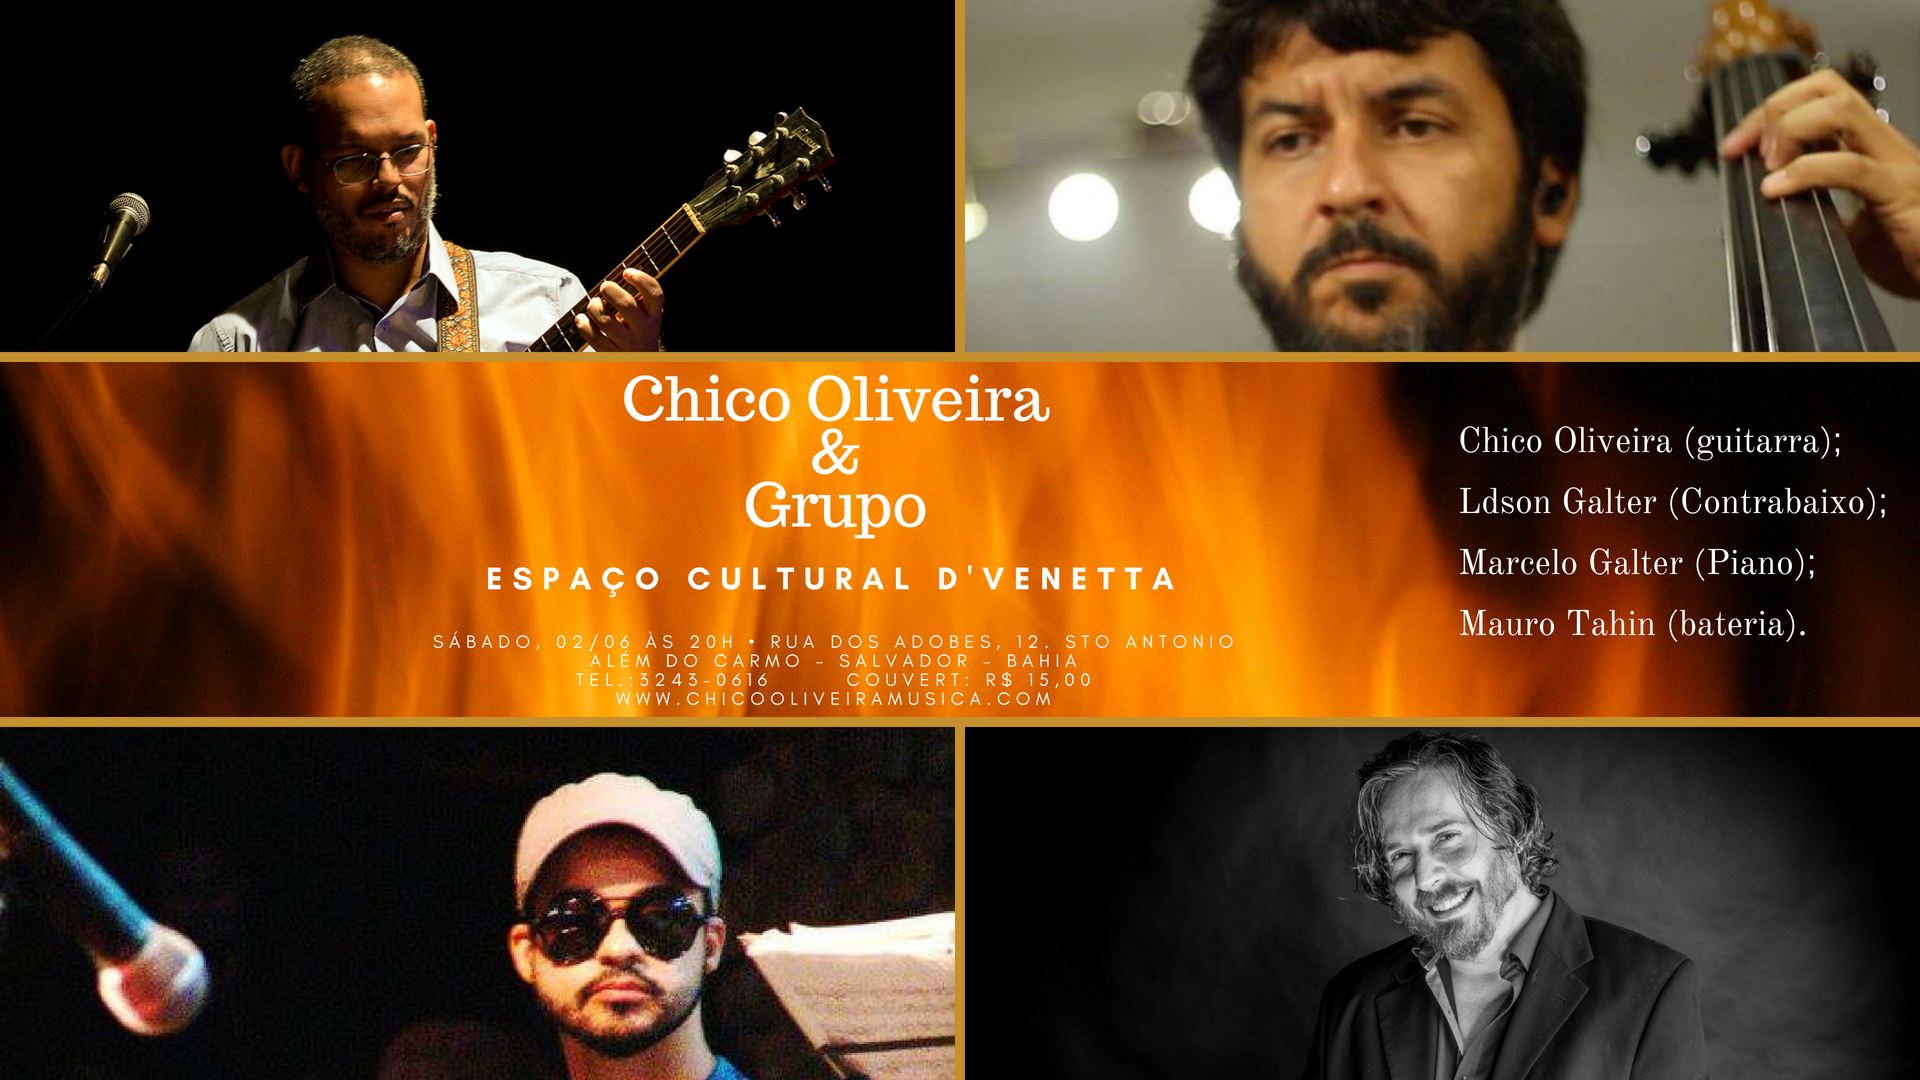  Chico Oliveira & Grupo no Espaço Cultural D'Venetta. Com Ldson Galter, Marcelo Galter e Mauro Tahin.